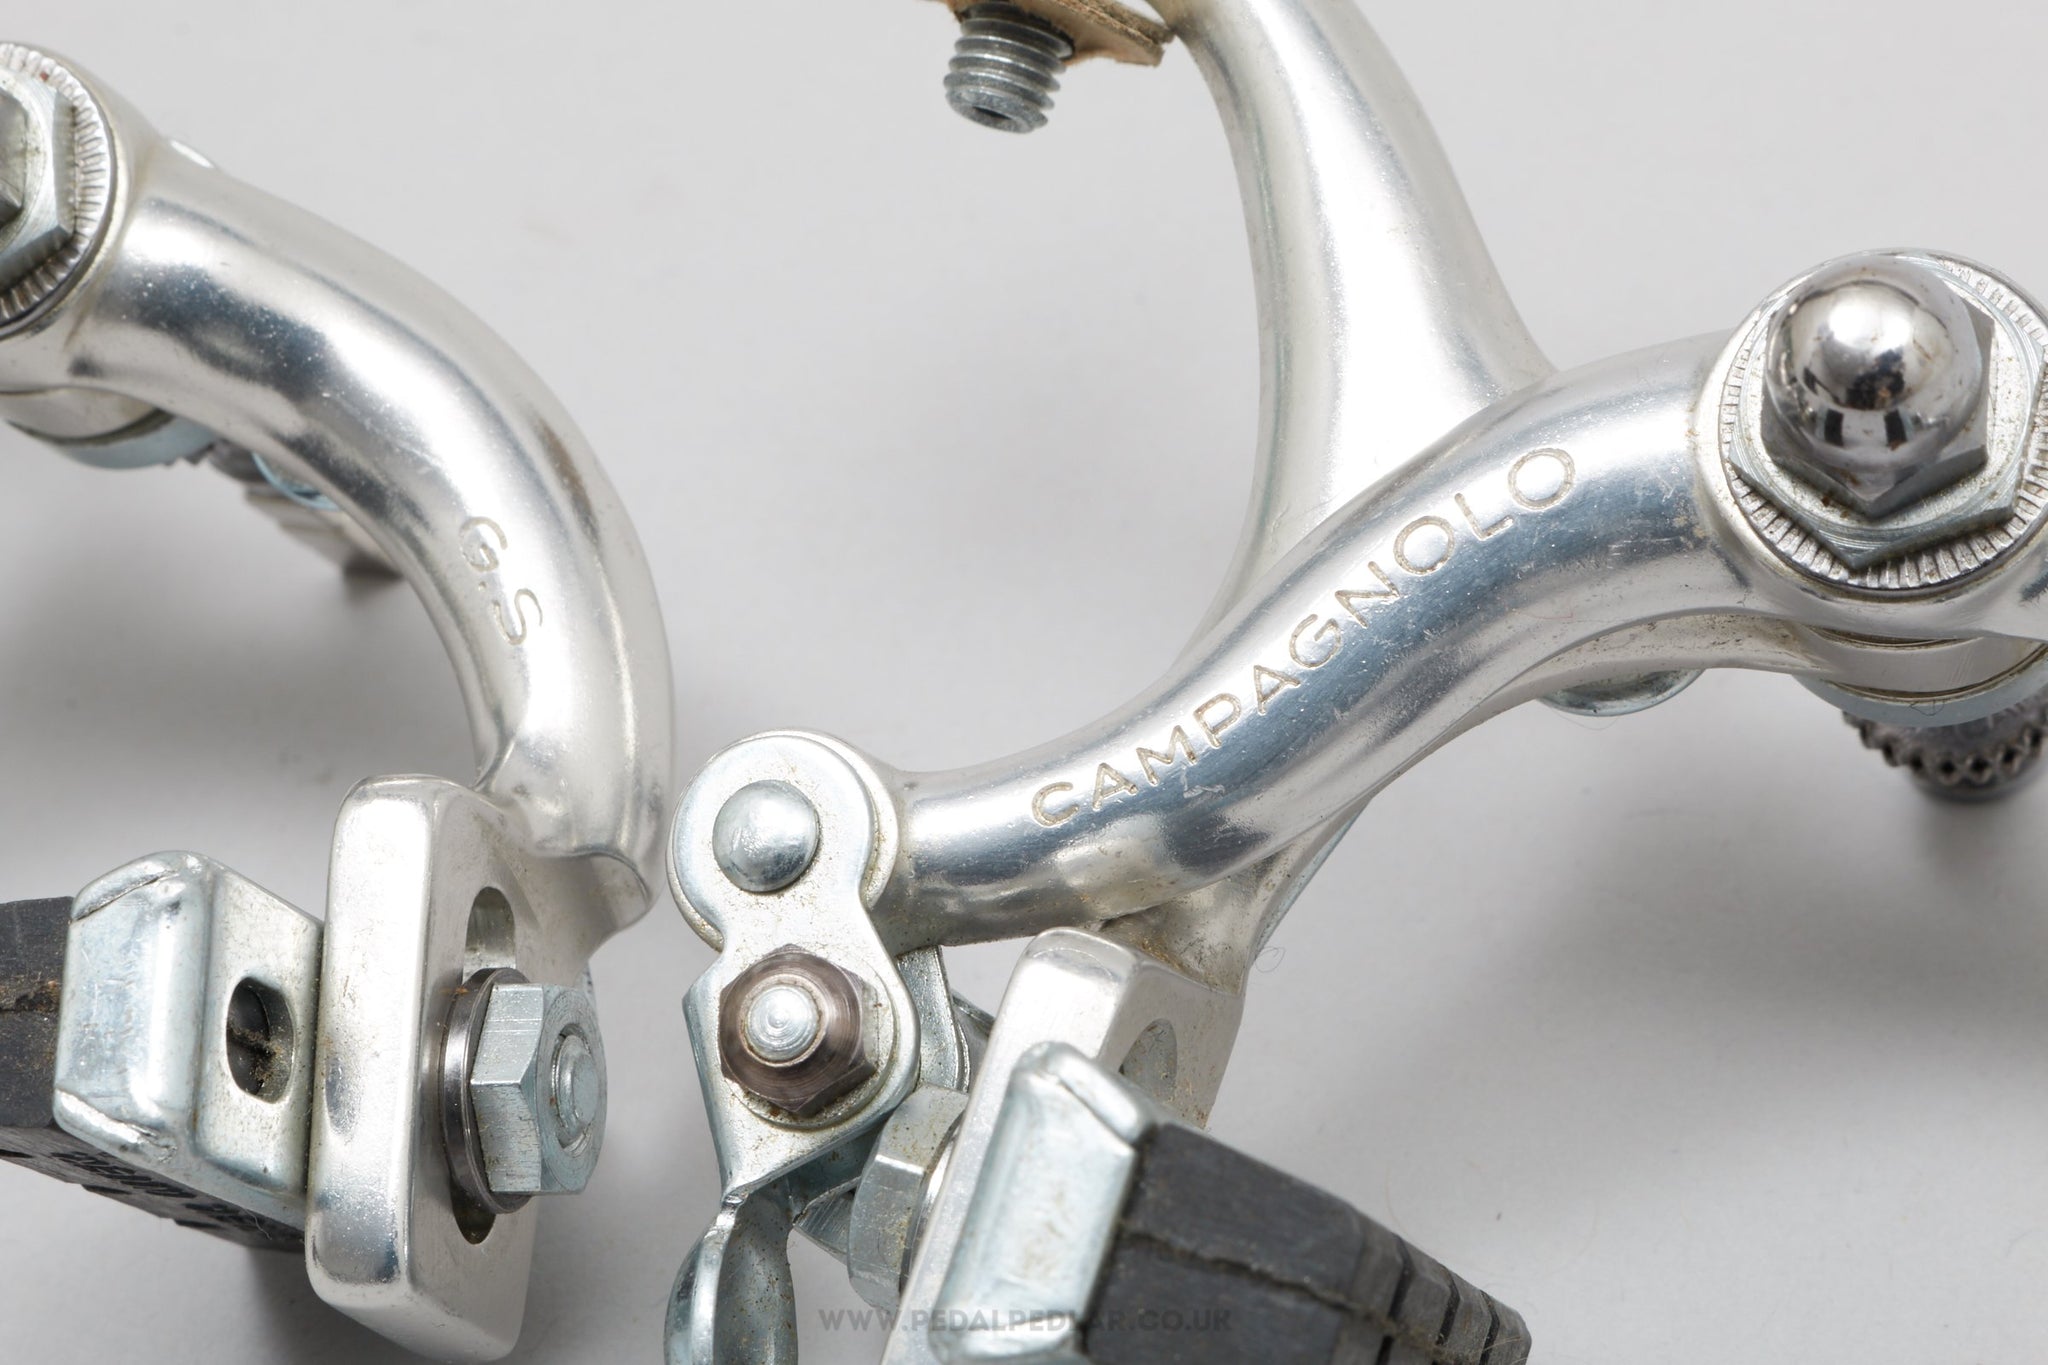 Campagnolo Gran Sport NOS/NIB Brake Calipers - Shop Vintage Bike Parts